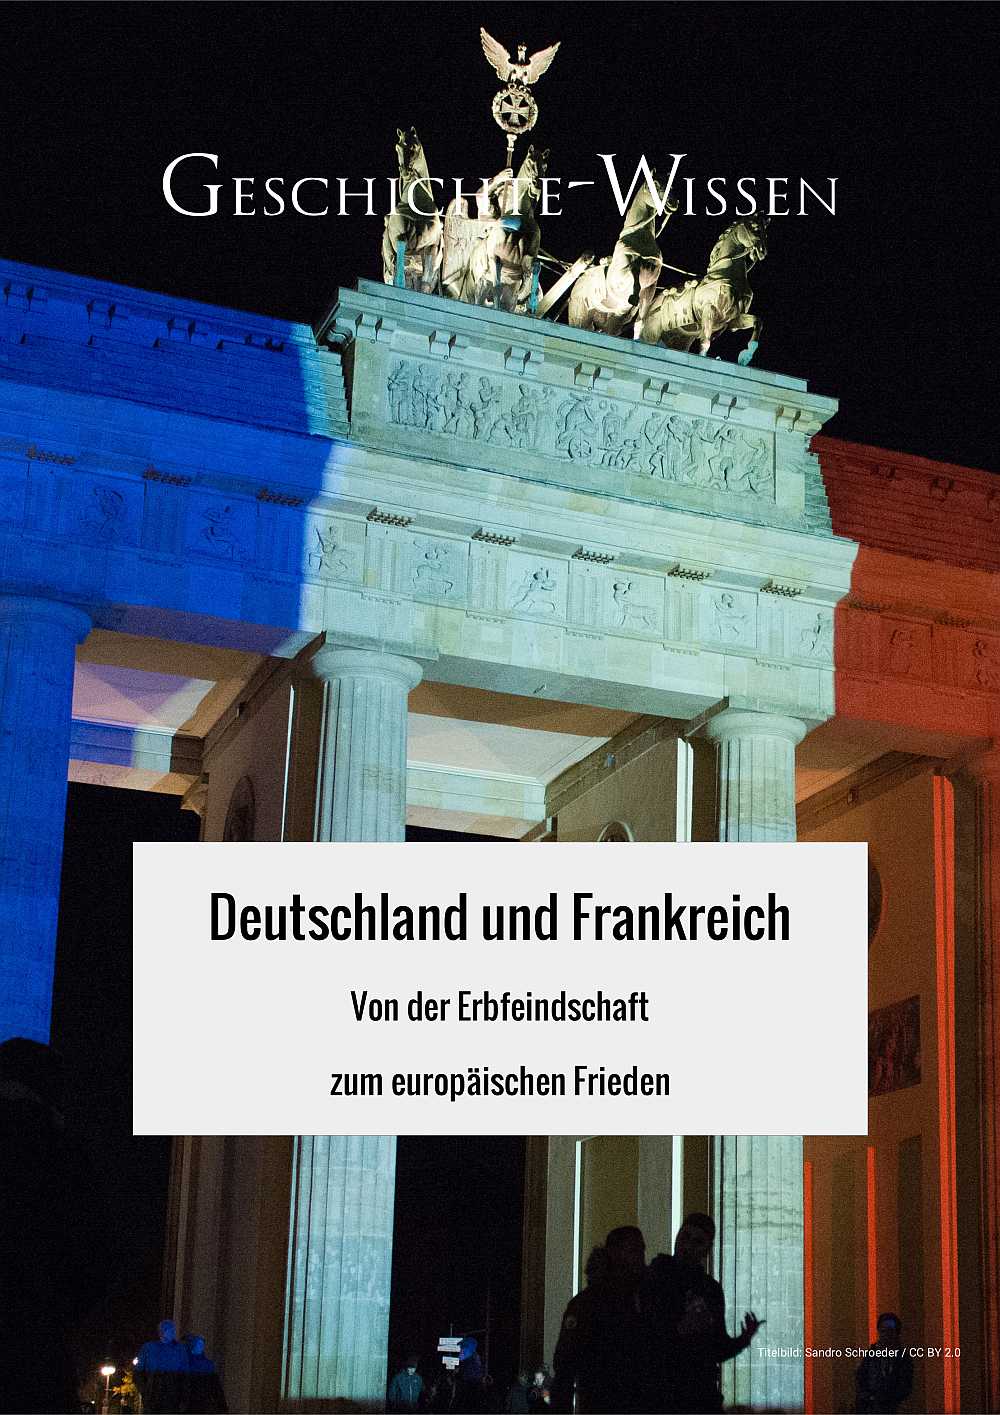 Von der Erbfeindschaft zum europäischen Frieden – ein Magazin über die Geschichte von Deutschland und Frankreich